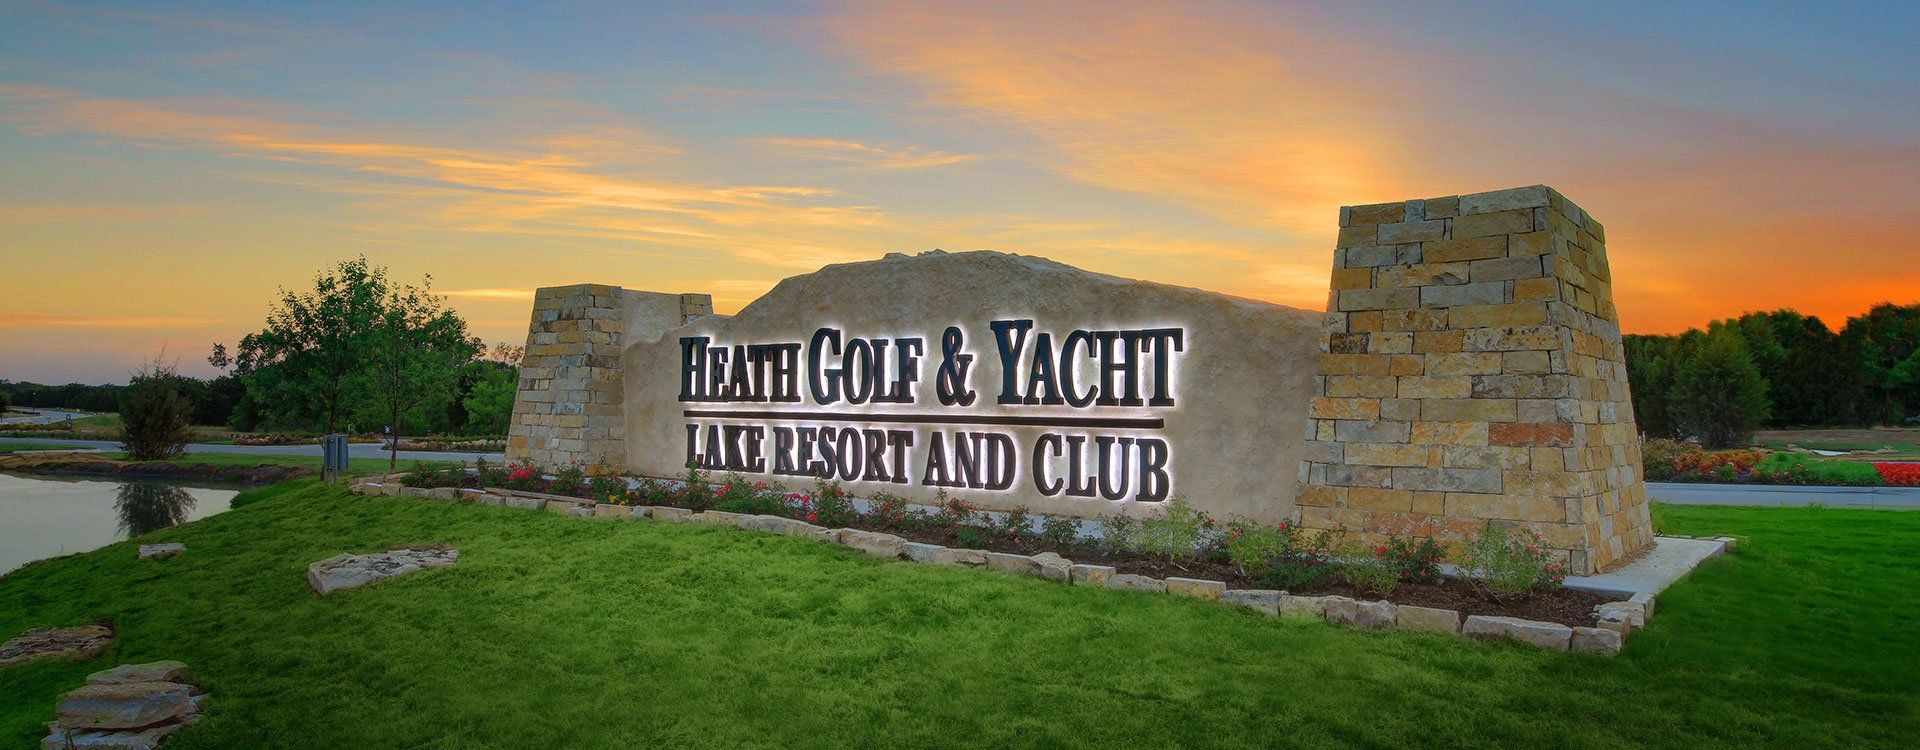 community | heath golf & yacht club | Heath, Texas 75032